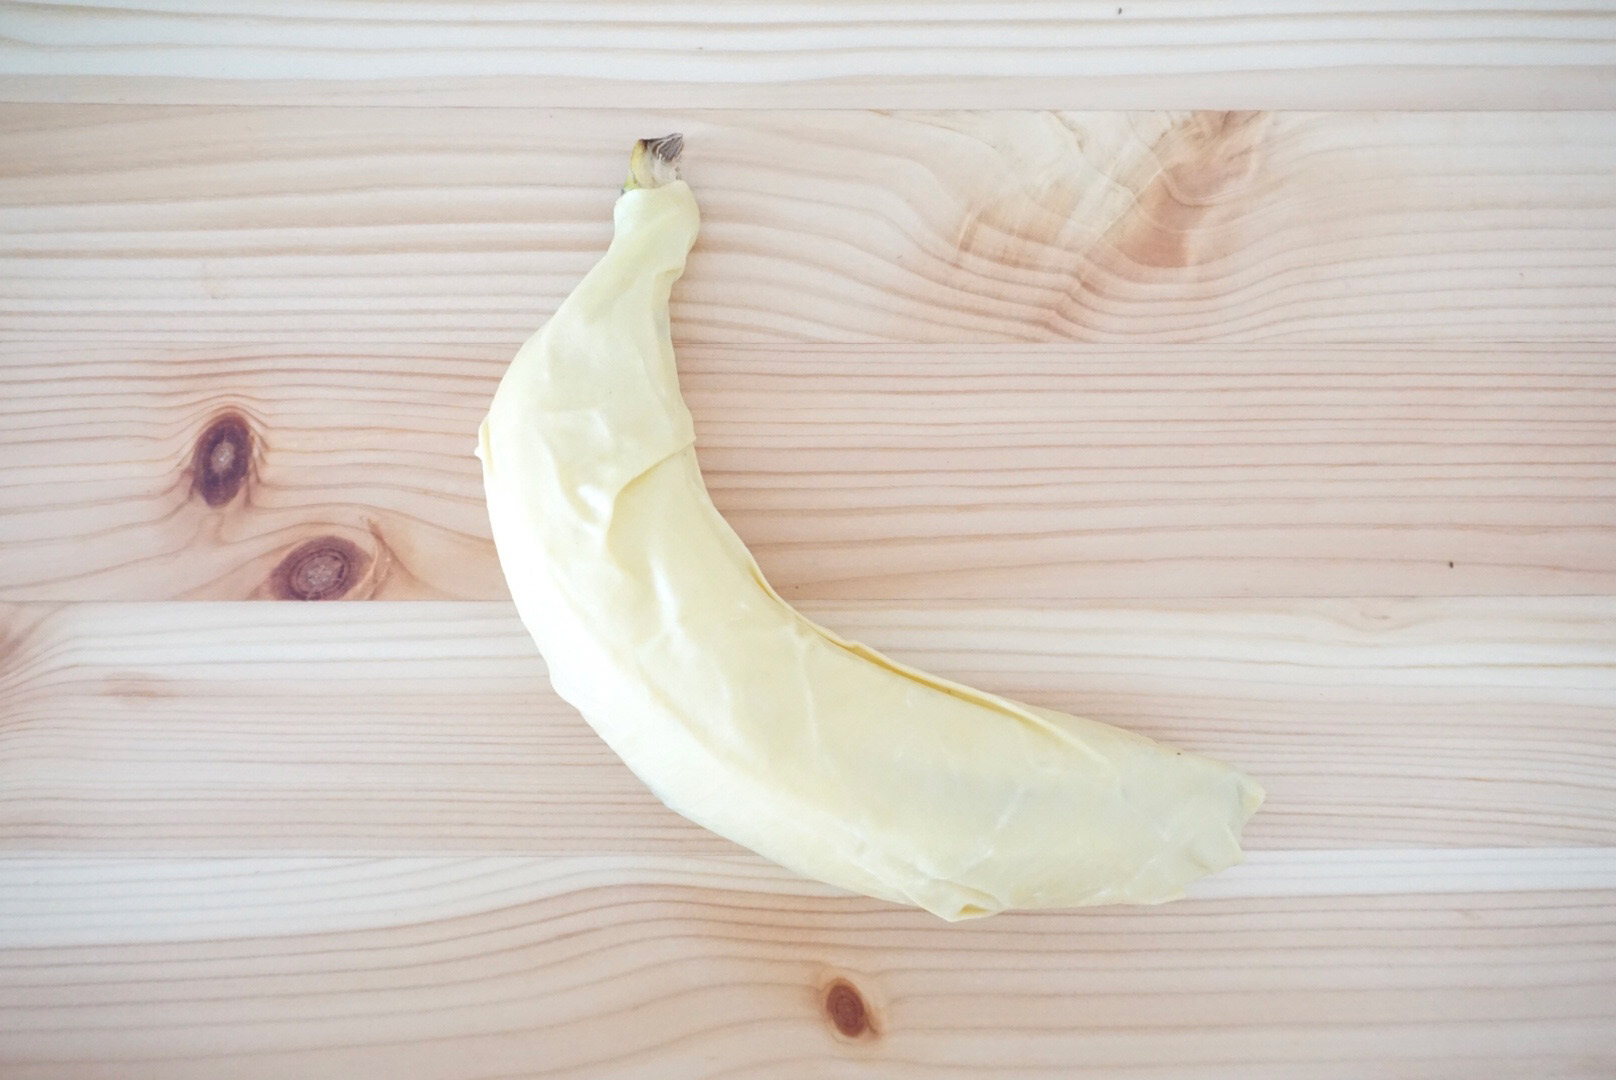 このようにピッタリと食材の形にフィットしてくれます。サイズはS（直径約13cm）・M（直径約19cm）・L（直径約33cm）で展開されていて、写真のバナナを包むのに使ったのはMサイズのものです。